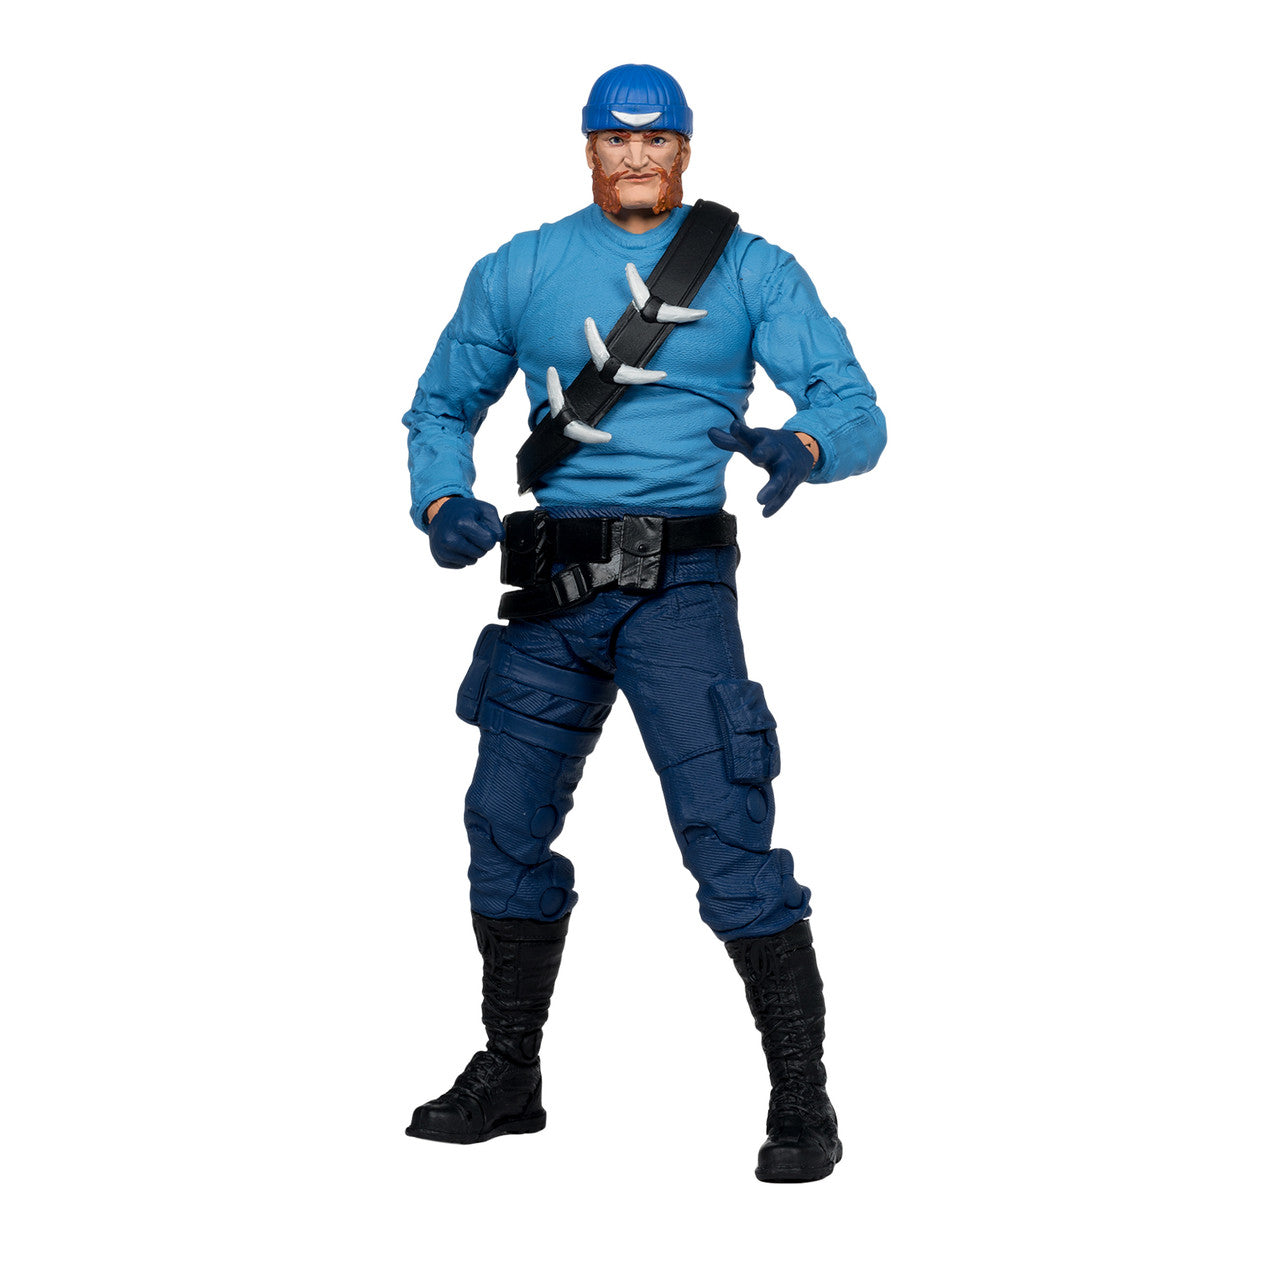 Captain Boomerang (The Flash) McFarlane Collector Edition 7" Action Figure